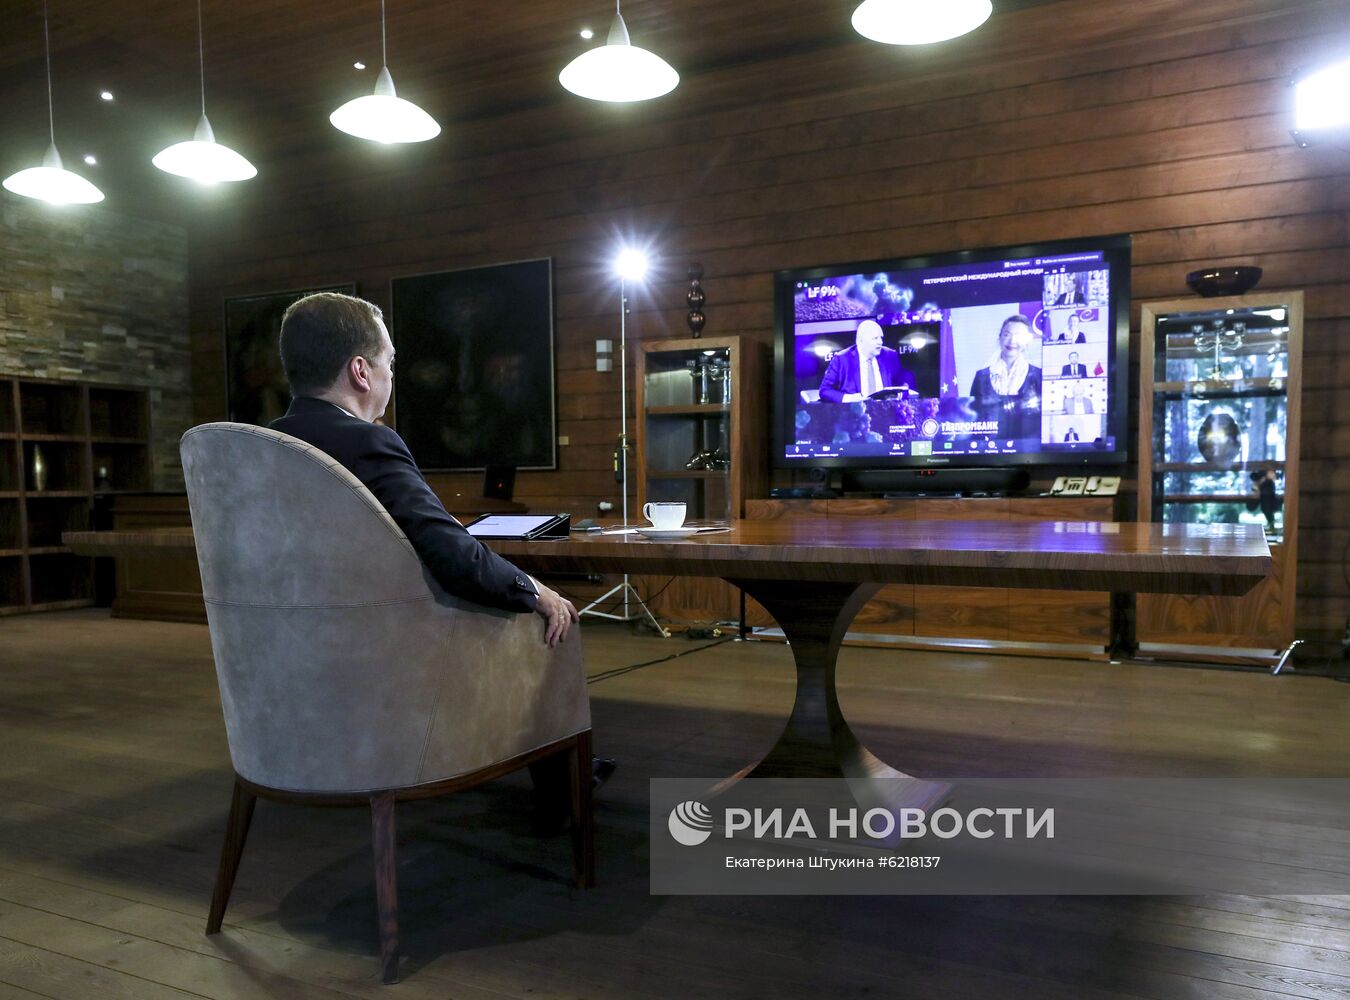 Заместитель председателя Совбеза РФ Д. Медведев принял участие в международном юридическом форуме